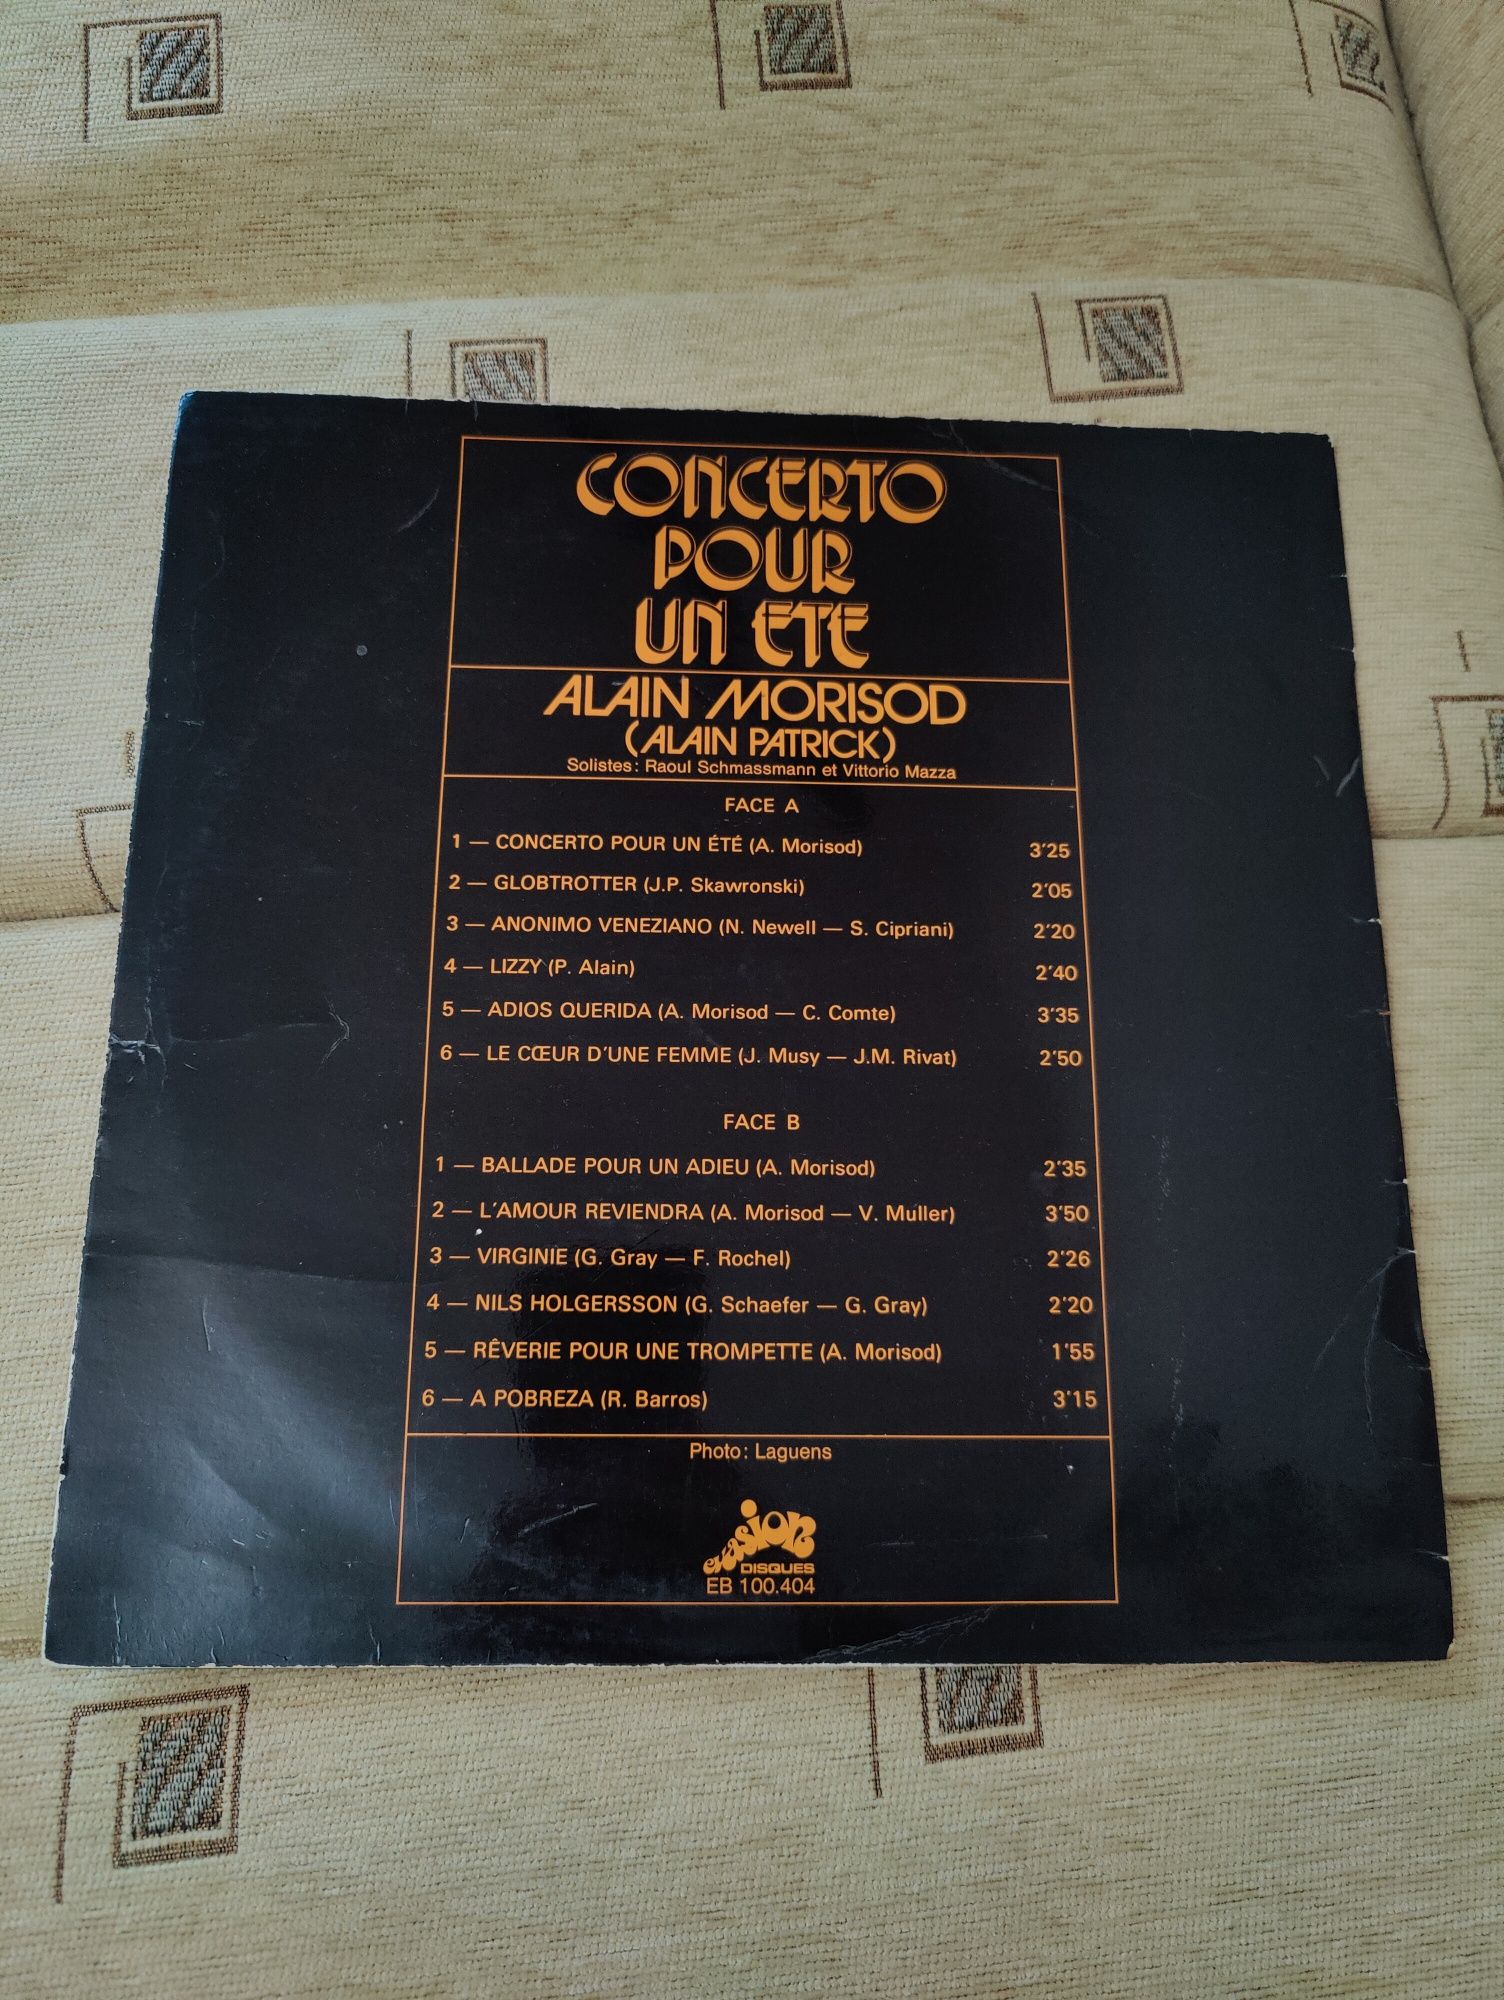 Vând vinyl Alain Morisod/Alain Patrick- Concerto pour un ete